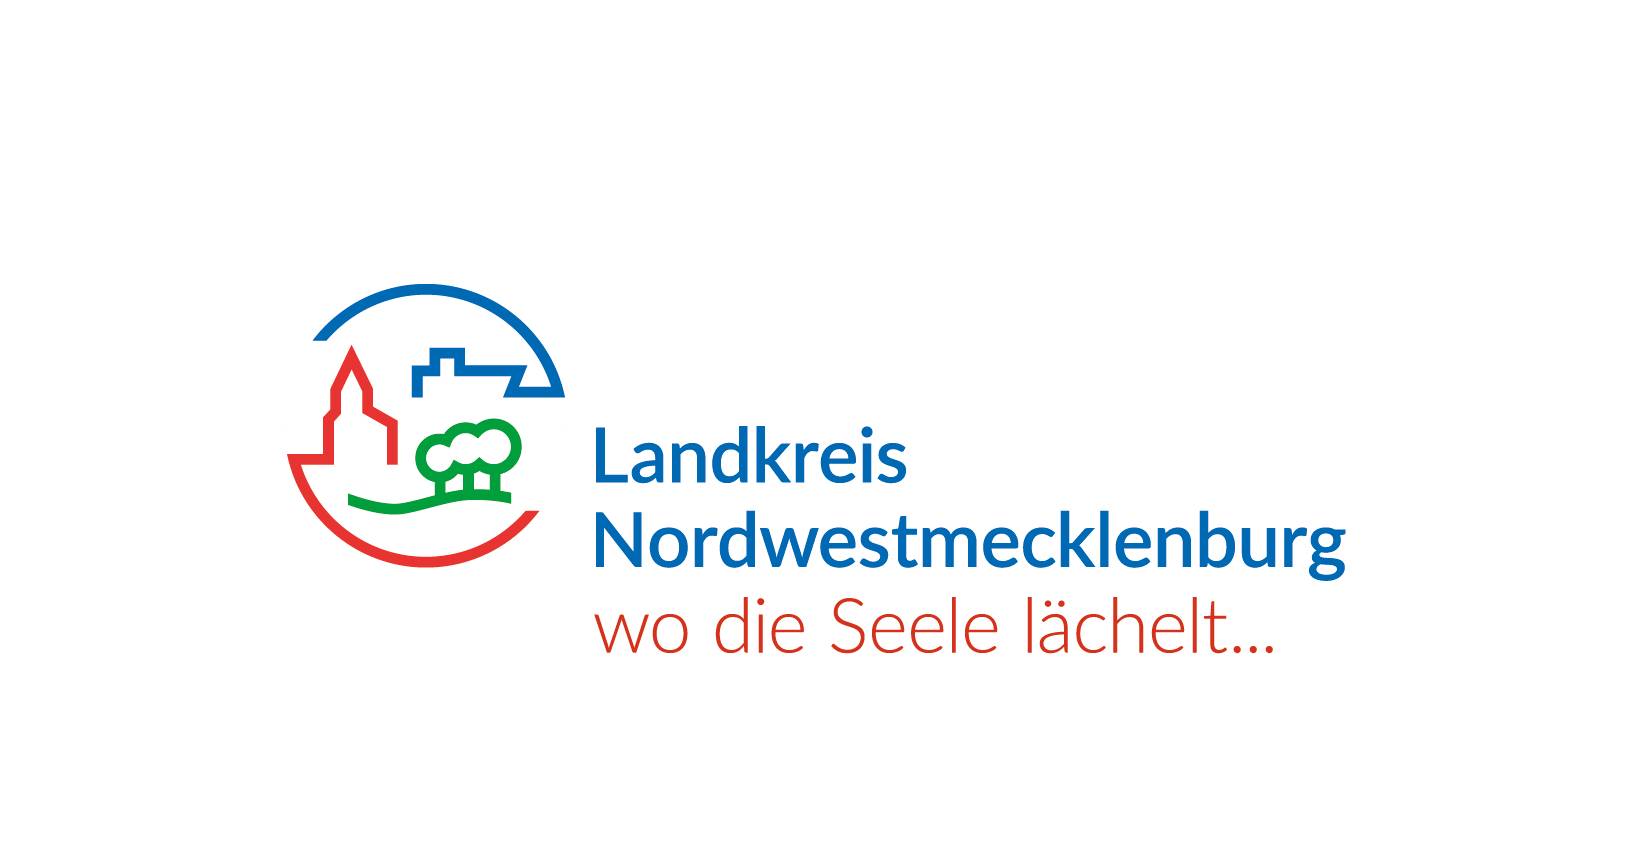 Lease a Bike Dienstradleasing Logo Landkreis Nordwestmecklenburg